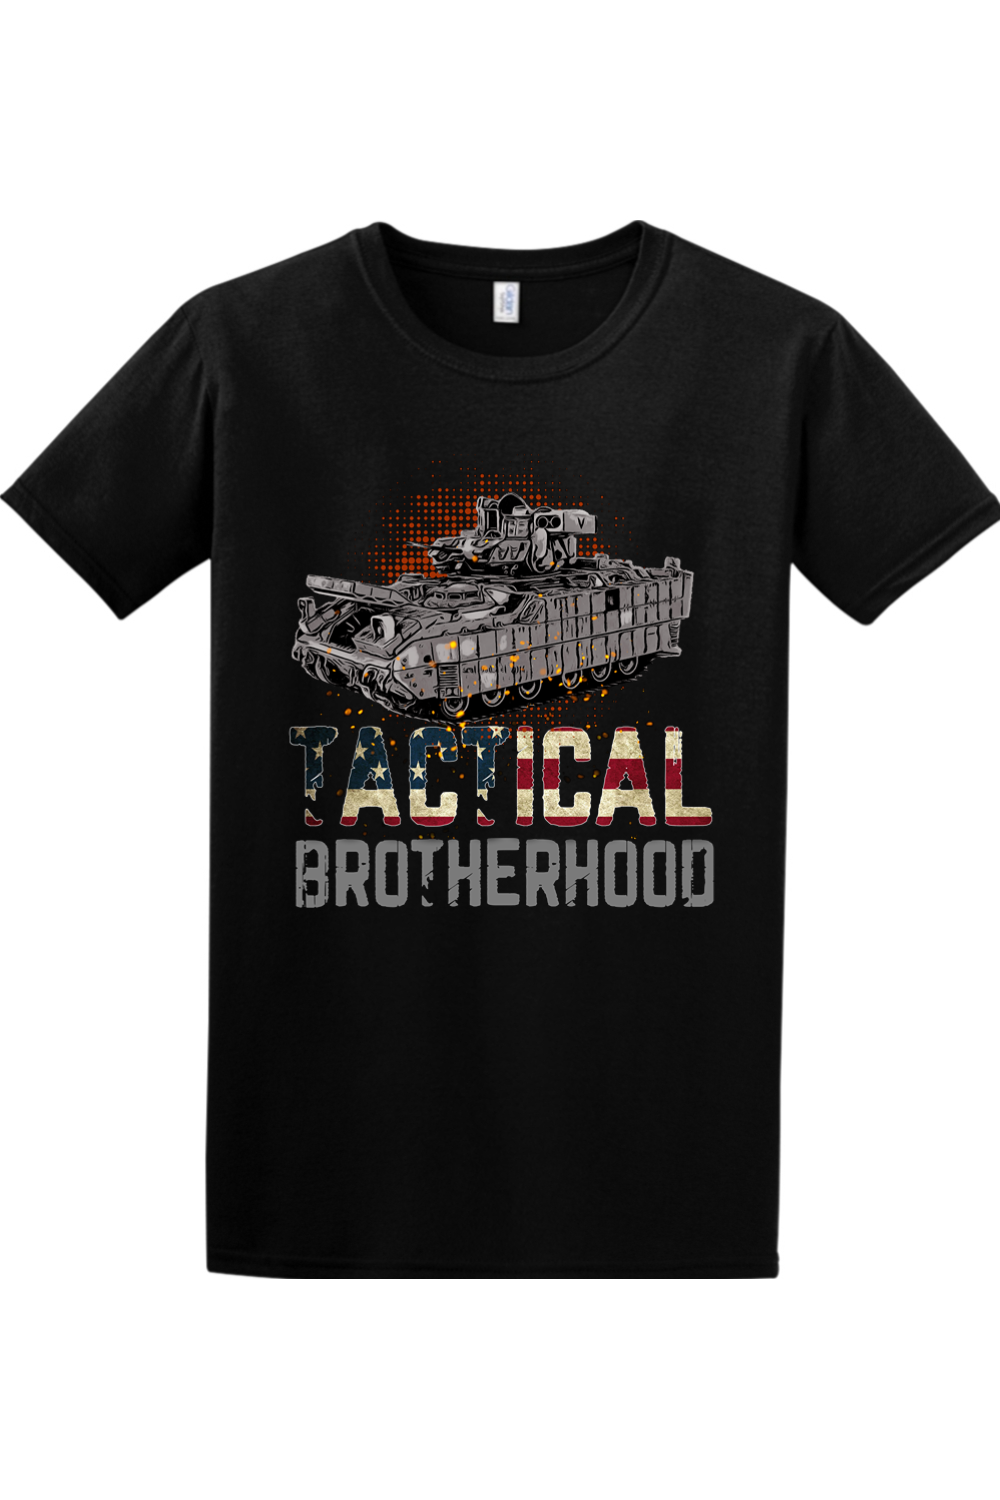 Bradley - Tactical Brotherhood